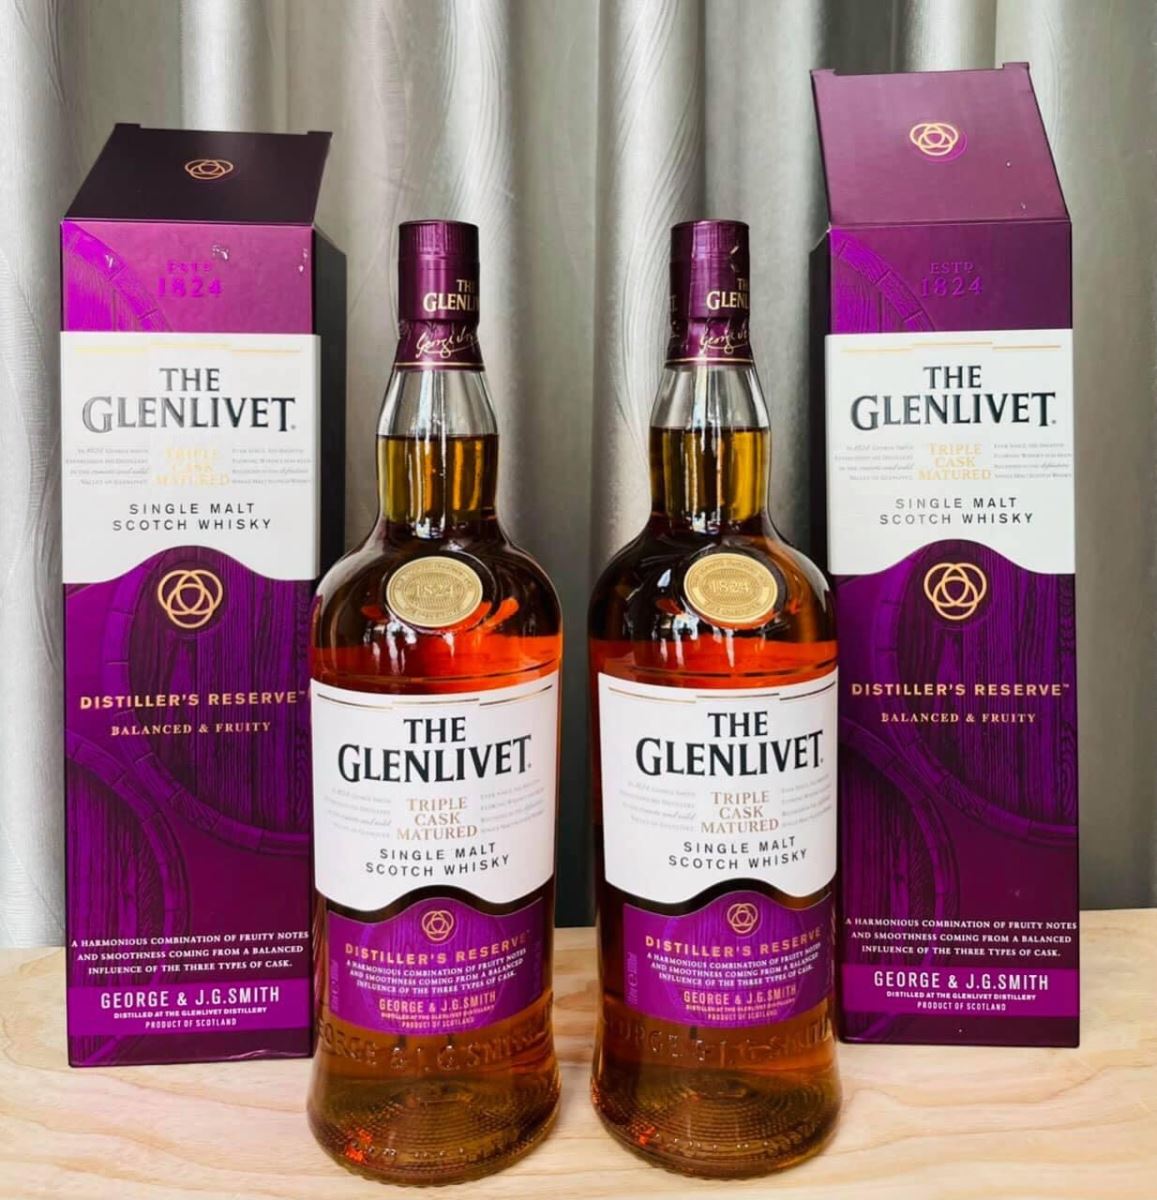 Rượu Glenlivet đã đạt nhiều giải thưởng quốc tế danh giá, chứng minh chất lượng của mình